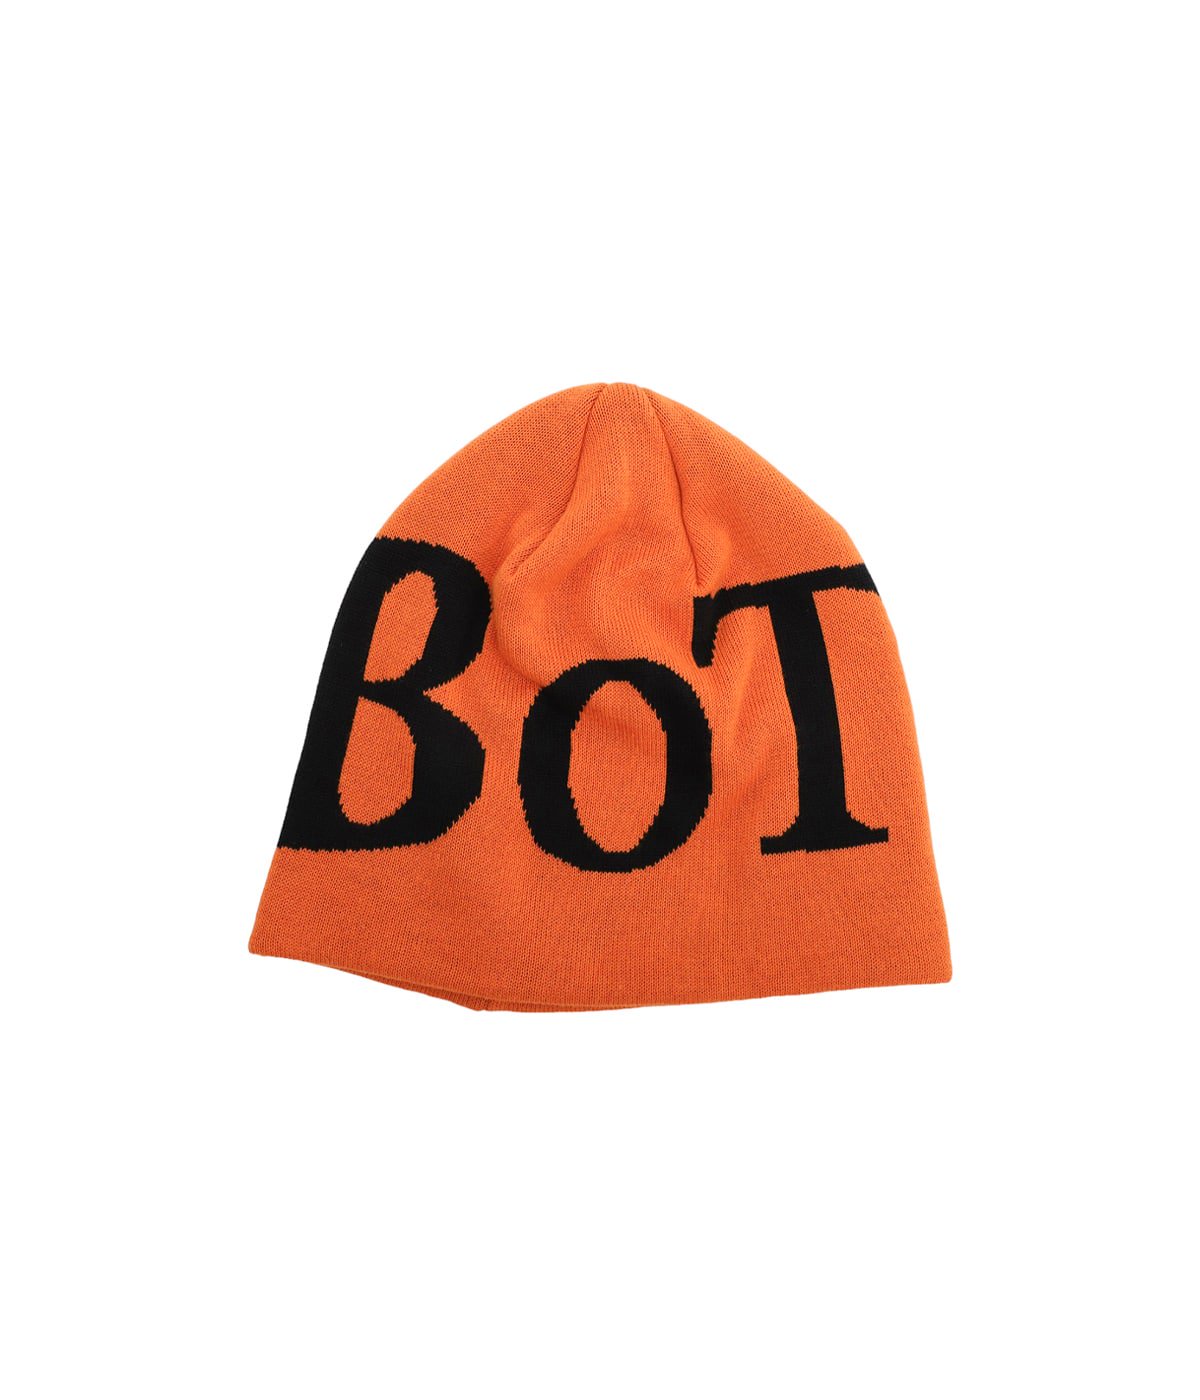 安い購入 ビーニー- ビーニー- bott Bott ビーニー Bott 帽子